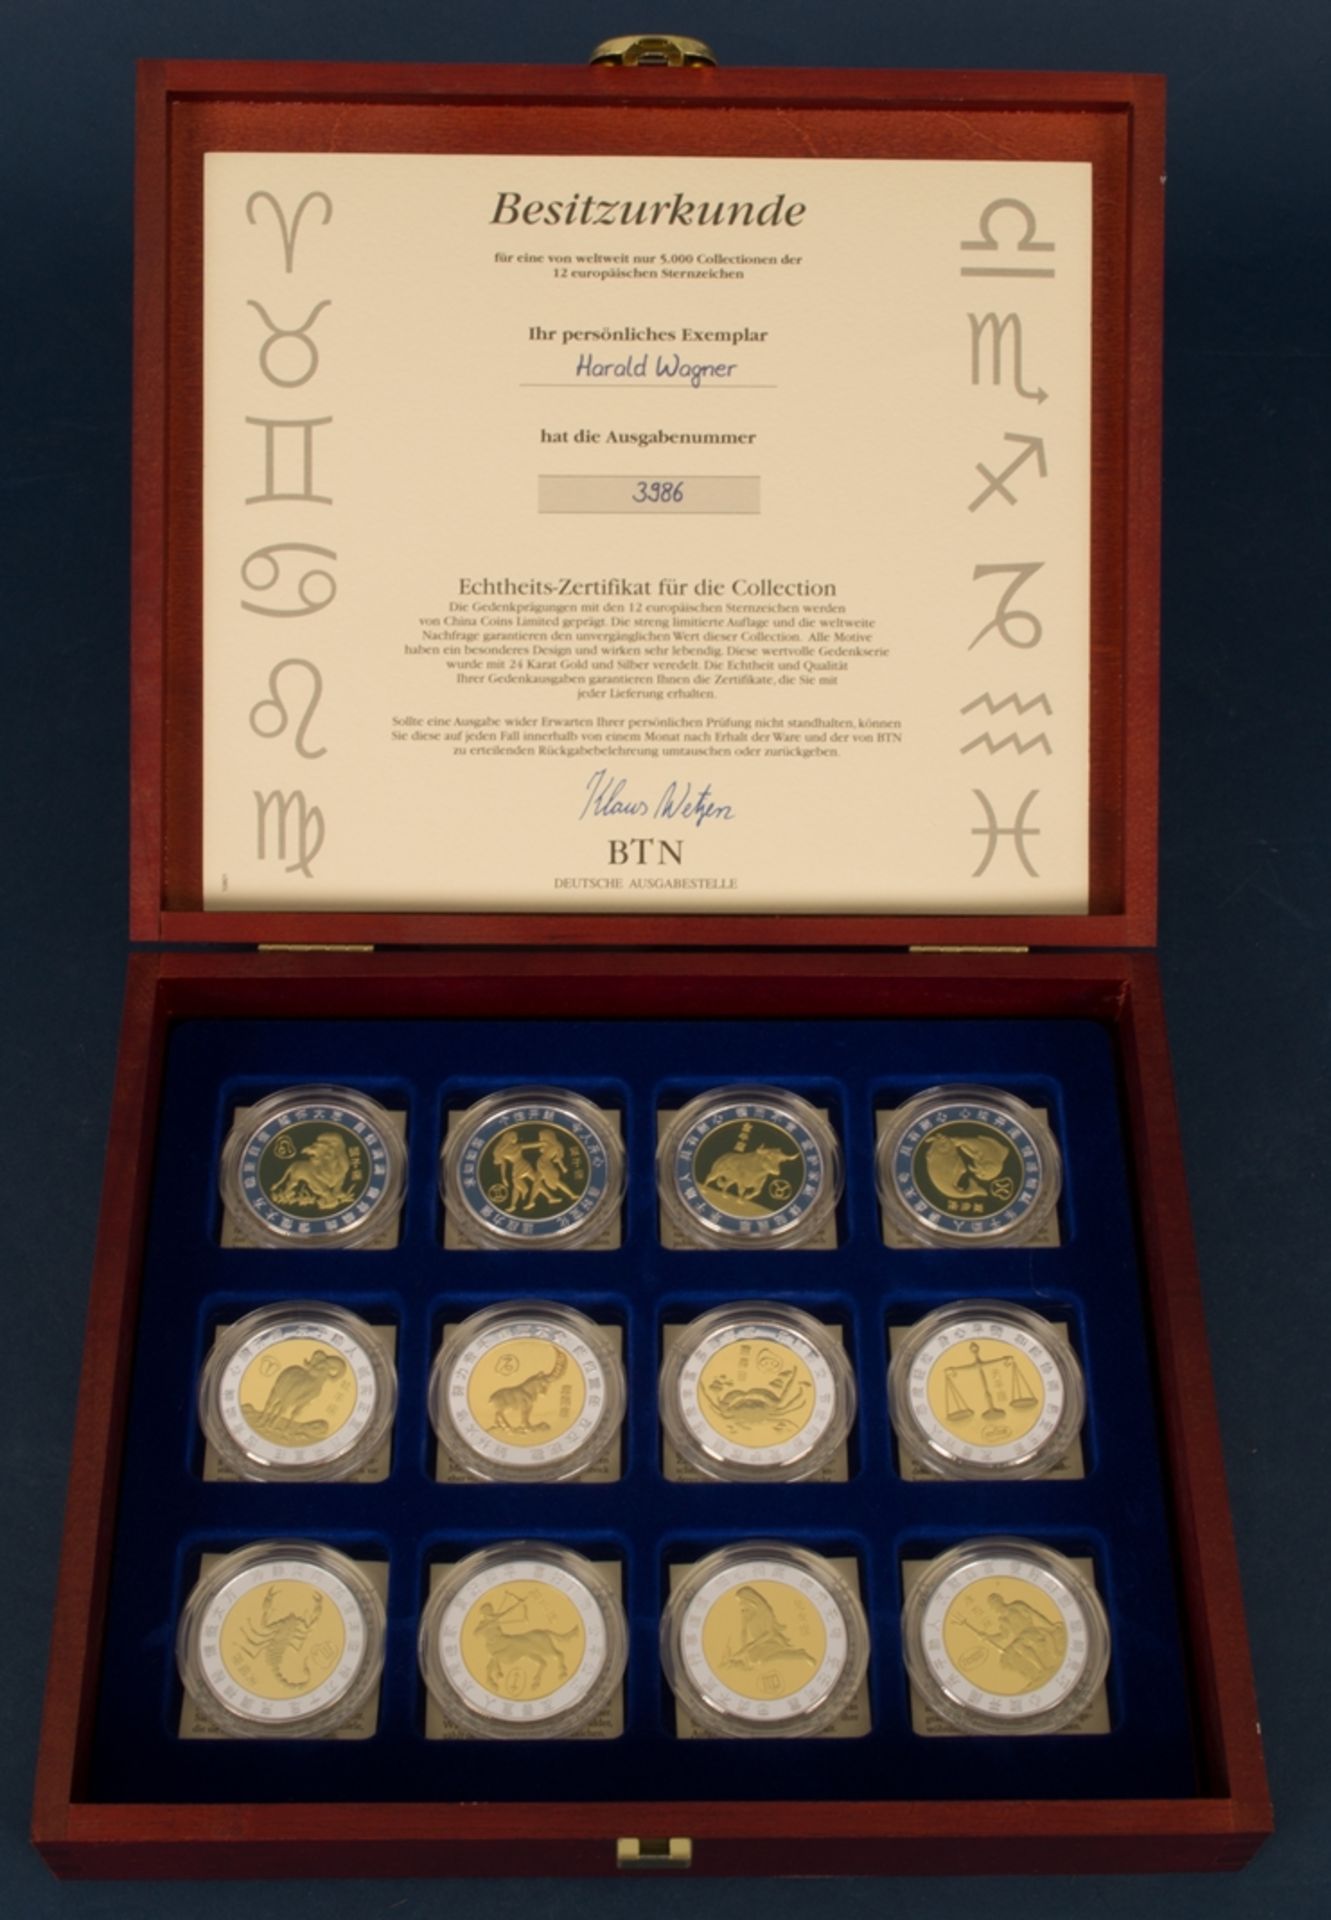 12 Medaillen/Gedenkprägungen der 12 europäischen Sternzeichen, geprägt von "China Coins Limited", in